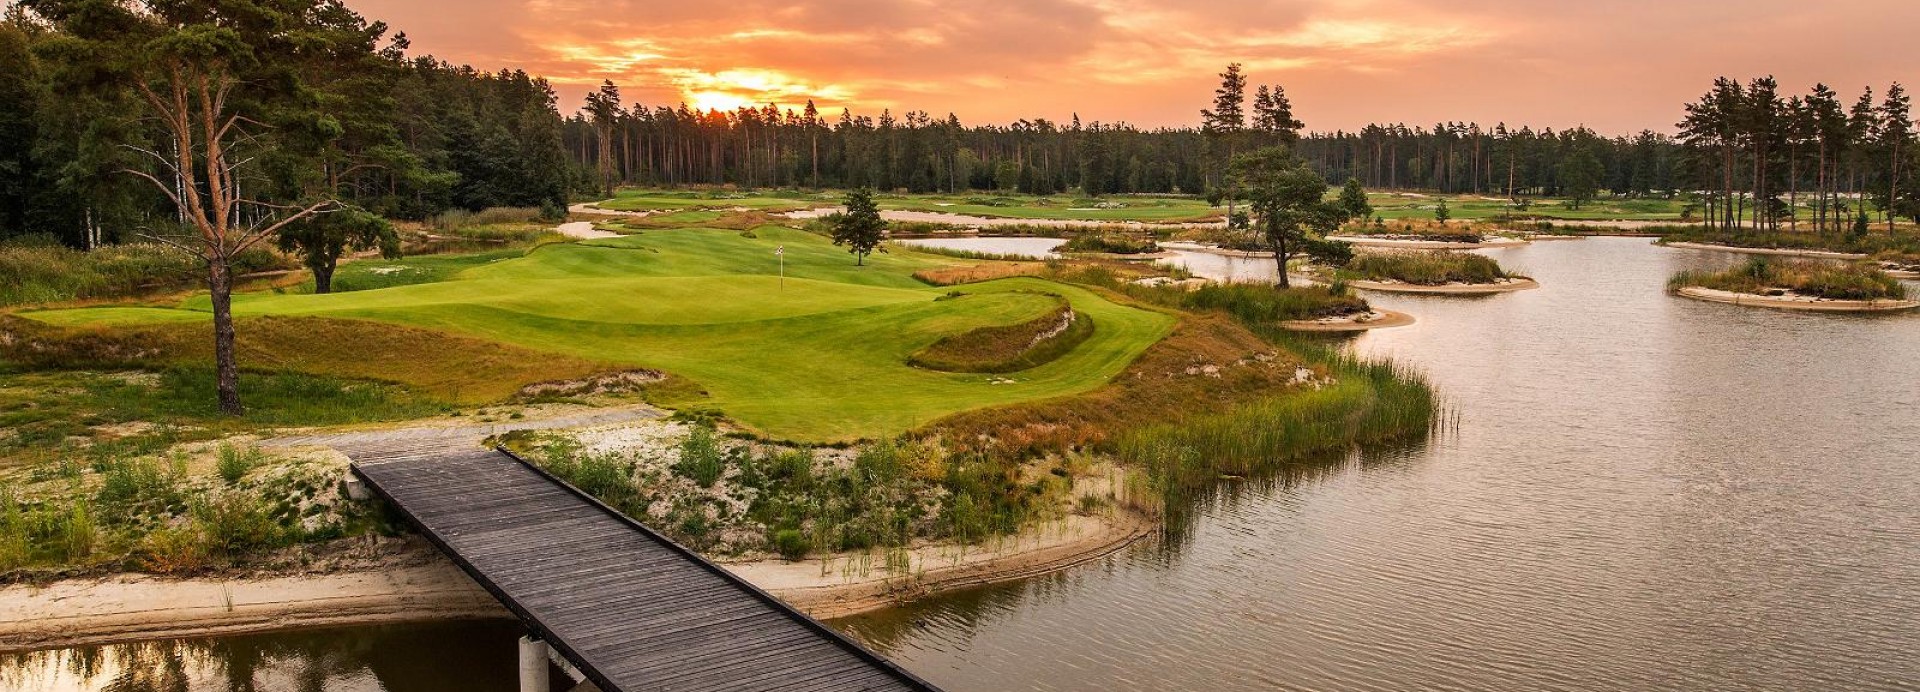 Pärnu Bay Golf Links  | Golfové zájezdy, golfová dovolená, luxusní golf